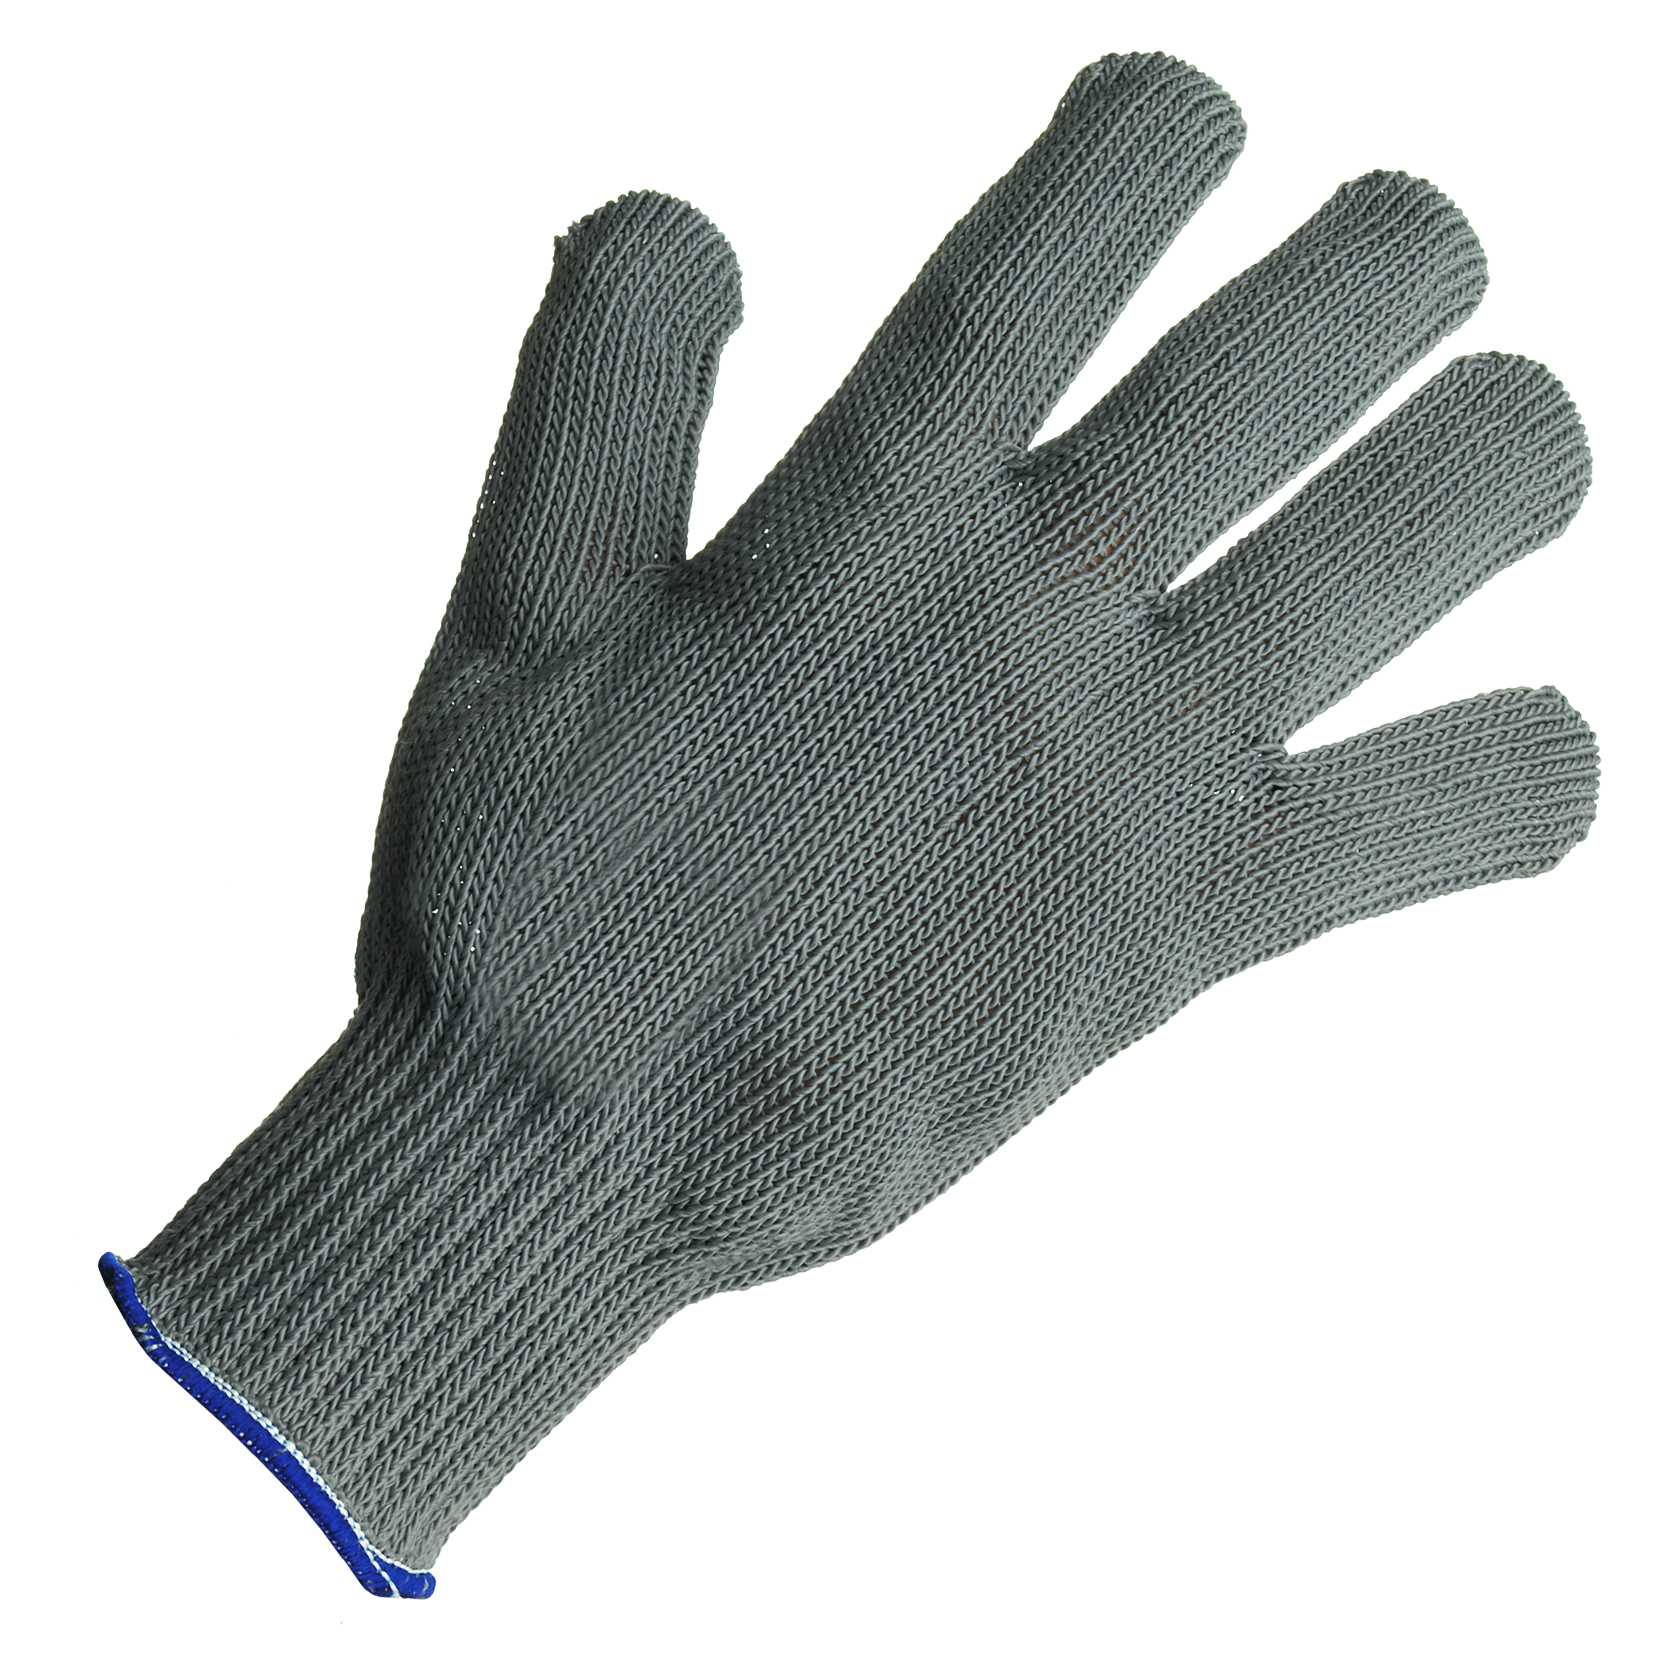 Fisherman's Gloves